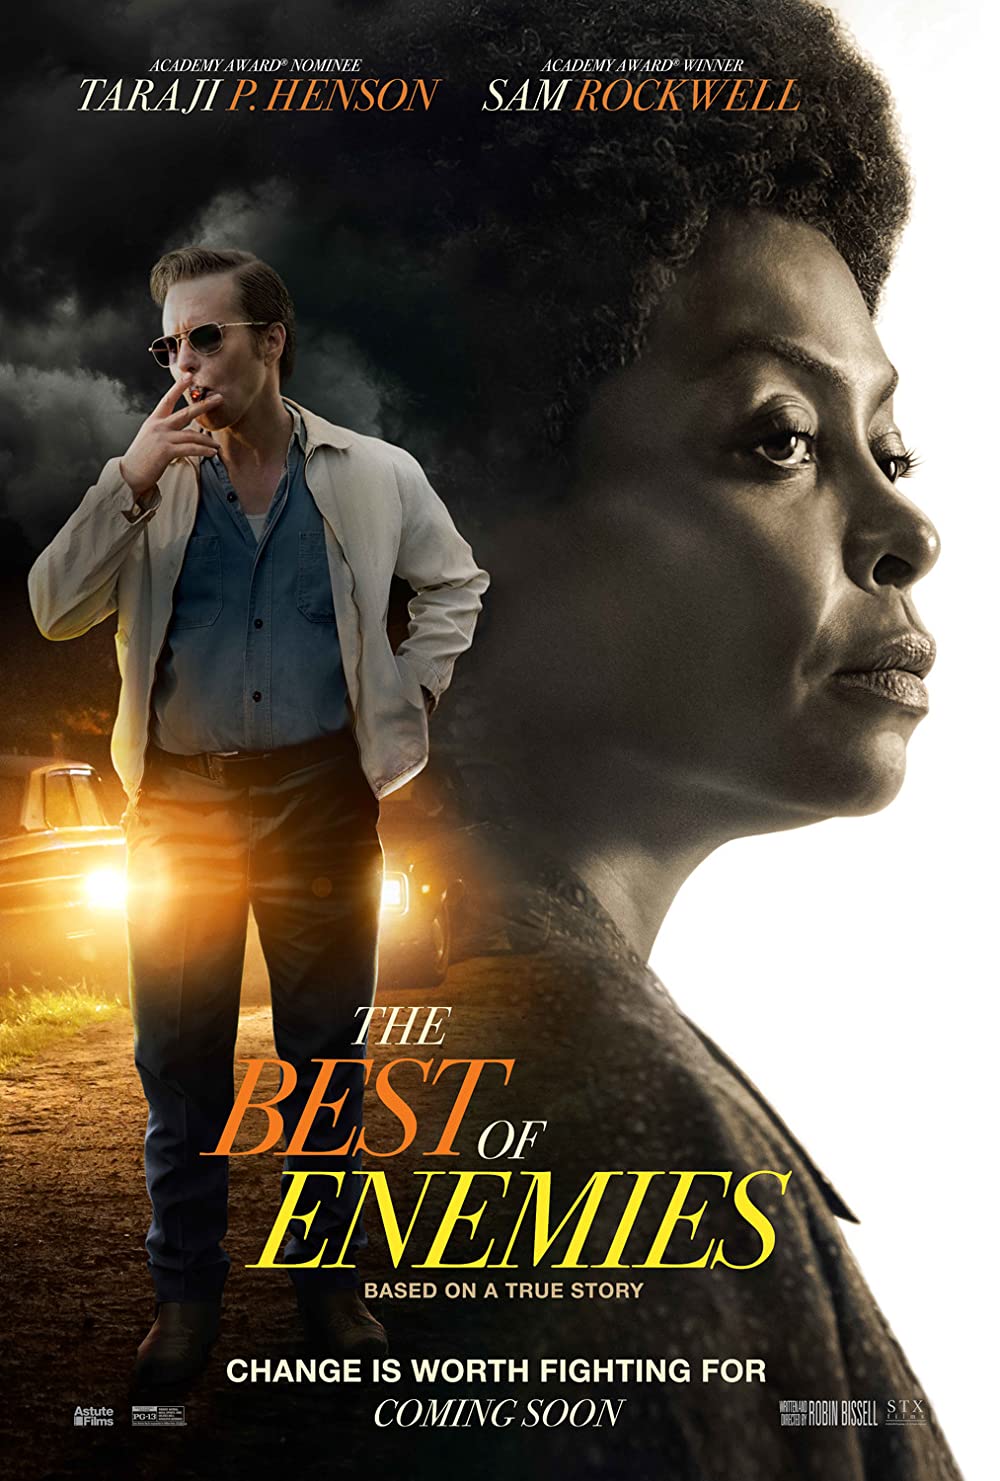 Filmbeschreibung zu The Best of Enemies